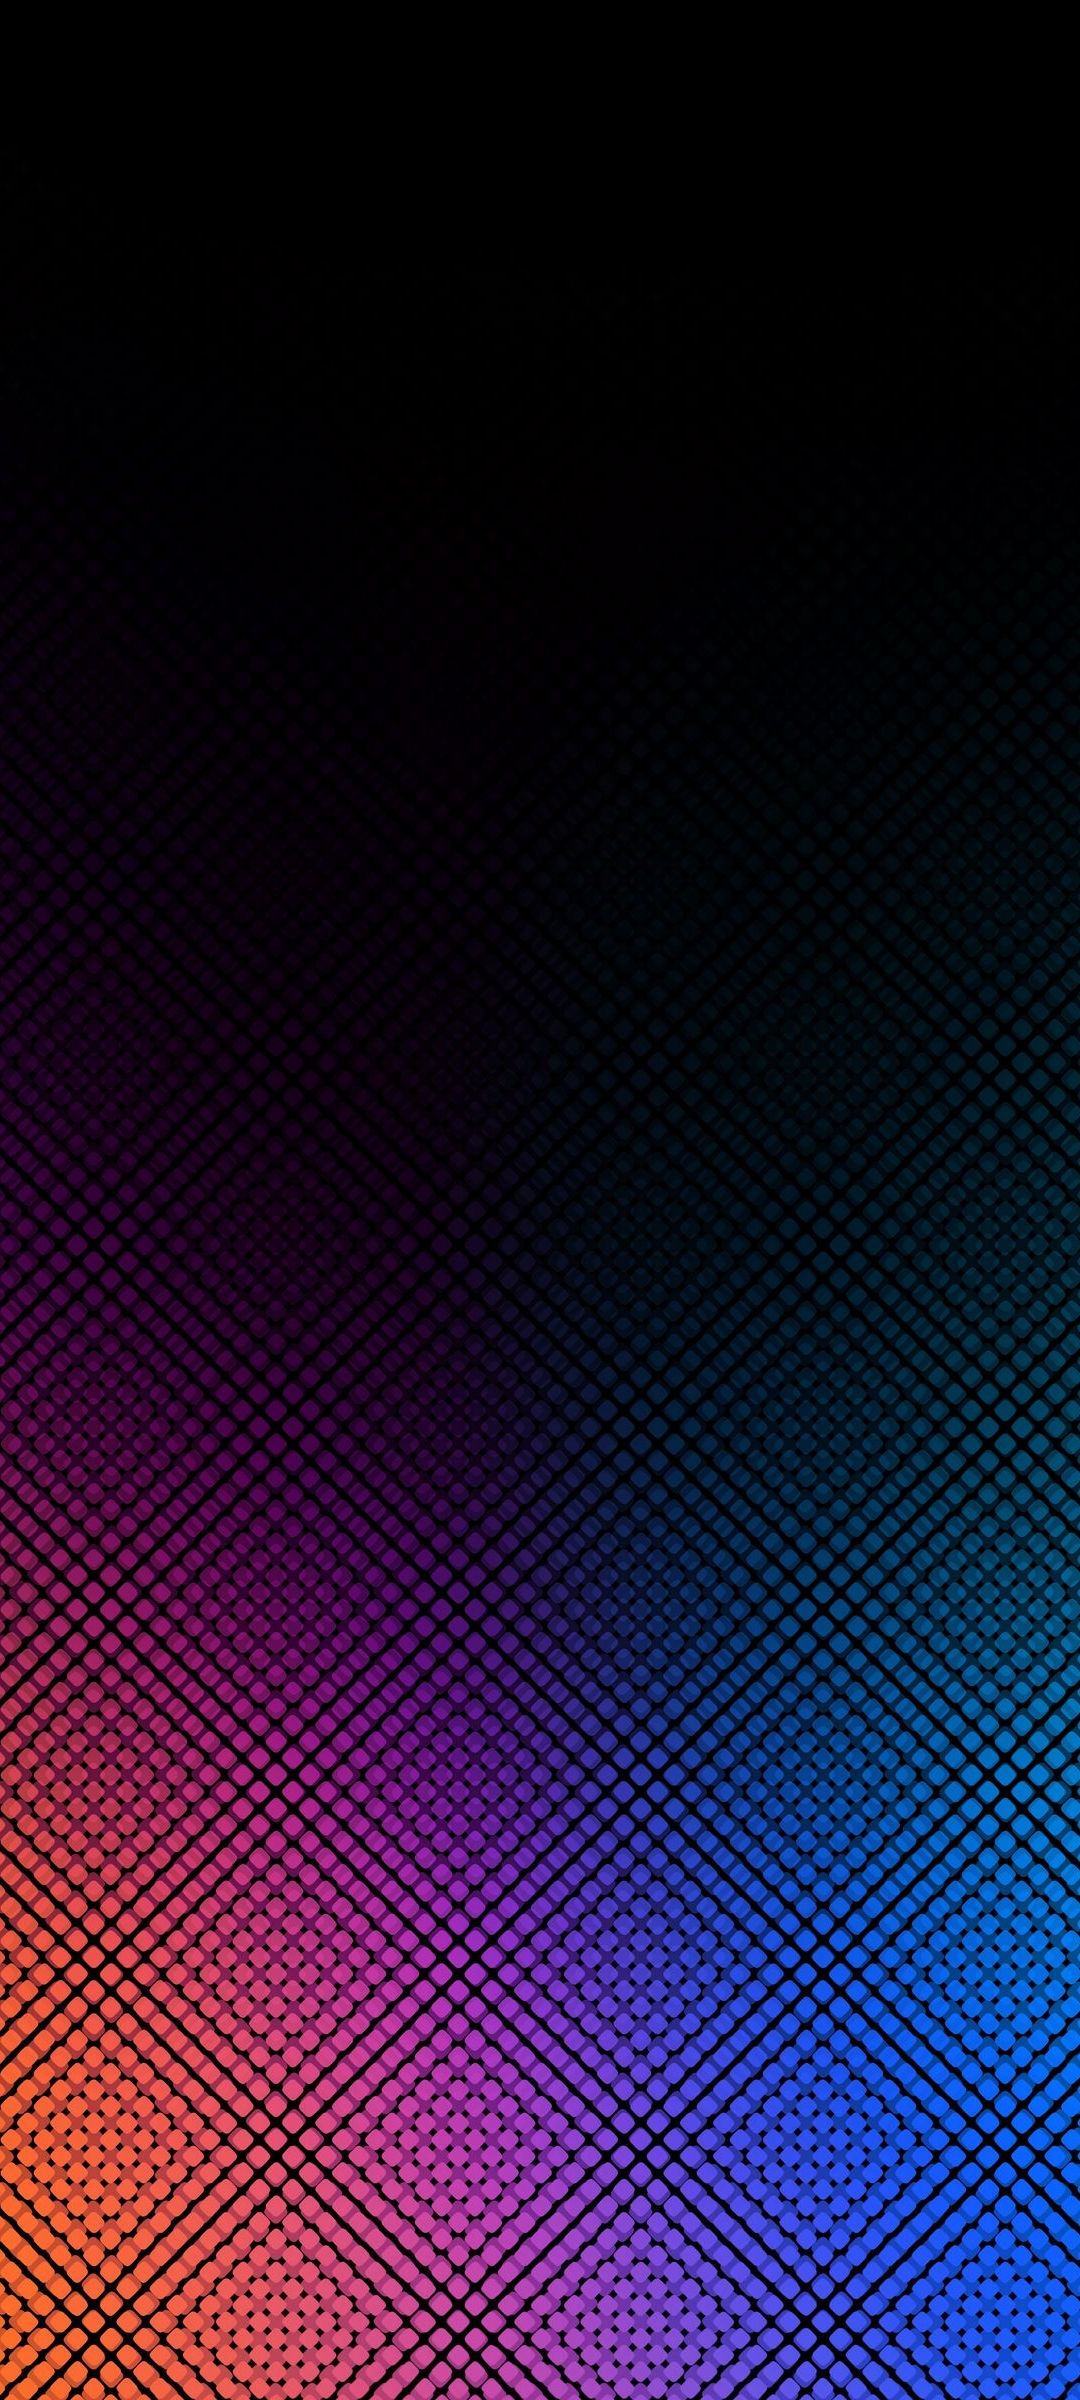 青 ピンク 黒の小さな菱形の集合体 Redmi Note 10 Pro Androidスマホ壁紙 待ち受け スマラン